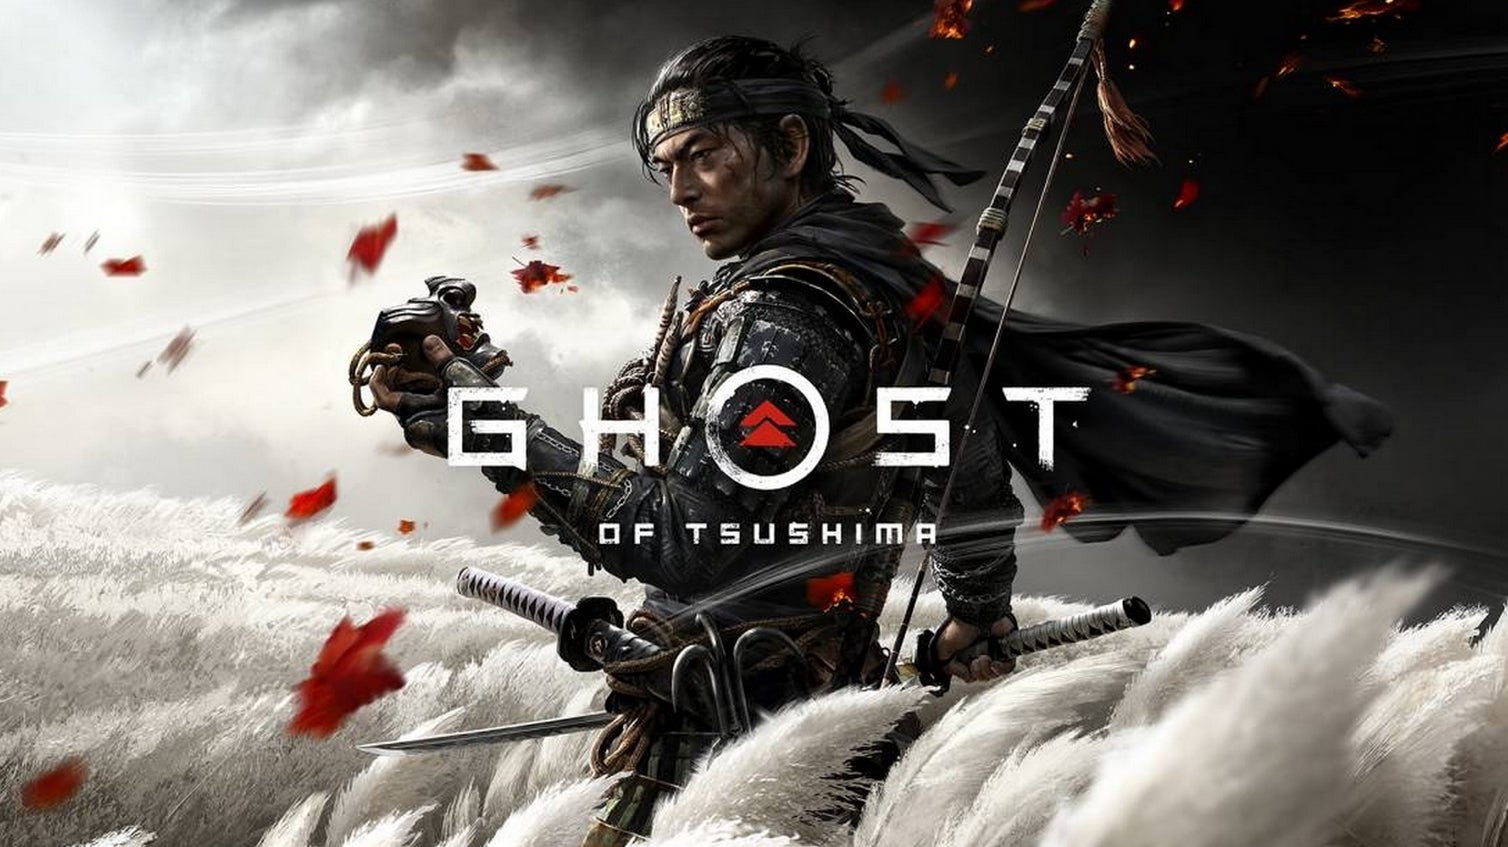 Bilder zu Ghost of Tsushima erscheint am 26. Juni für PS4, Collector's Edition angekündigt